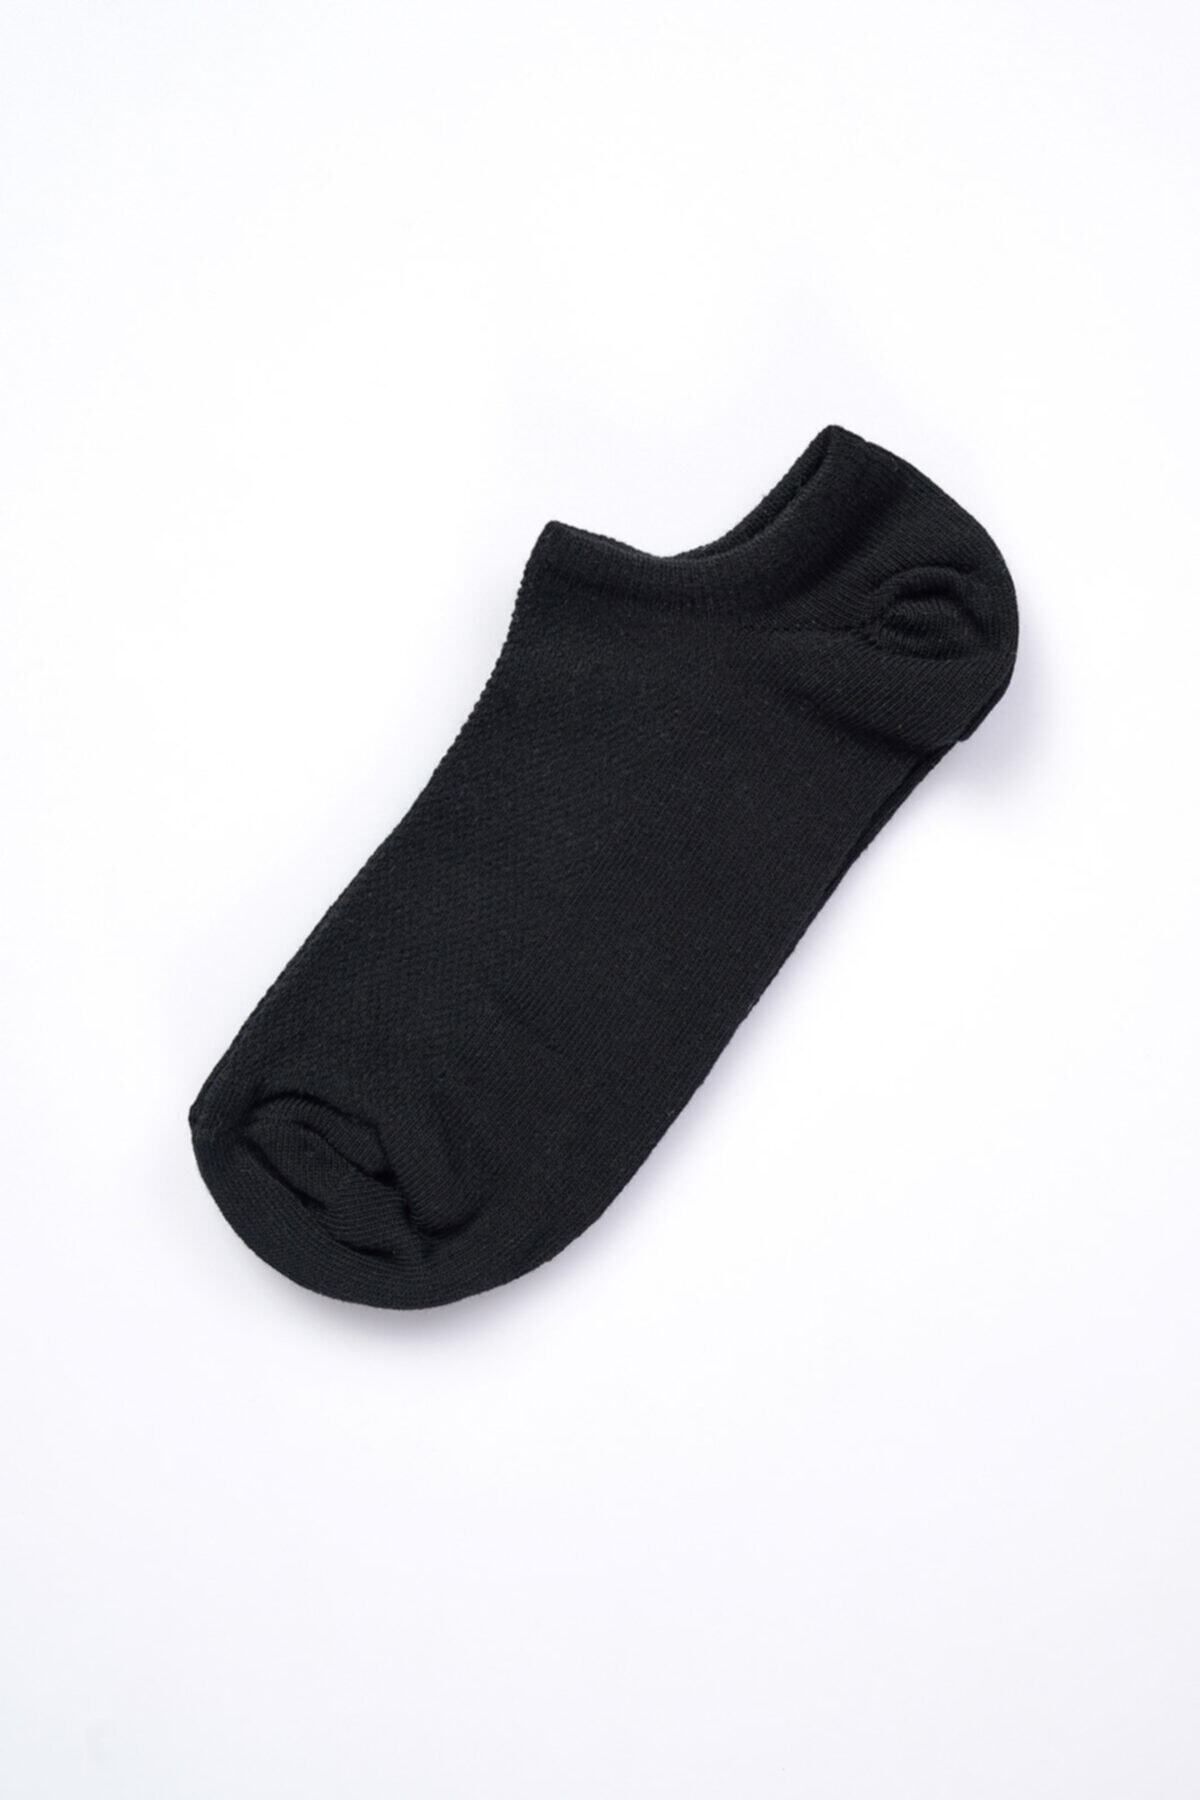 Dagi Siyah Yoga-plates Çorabı